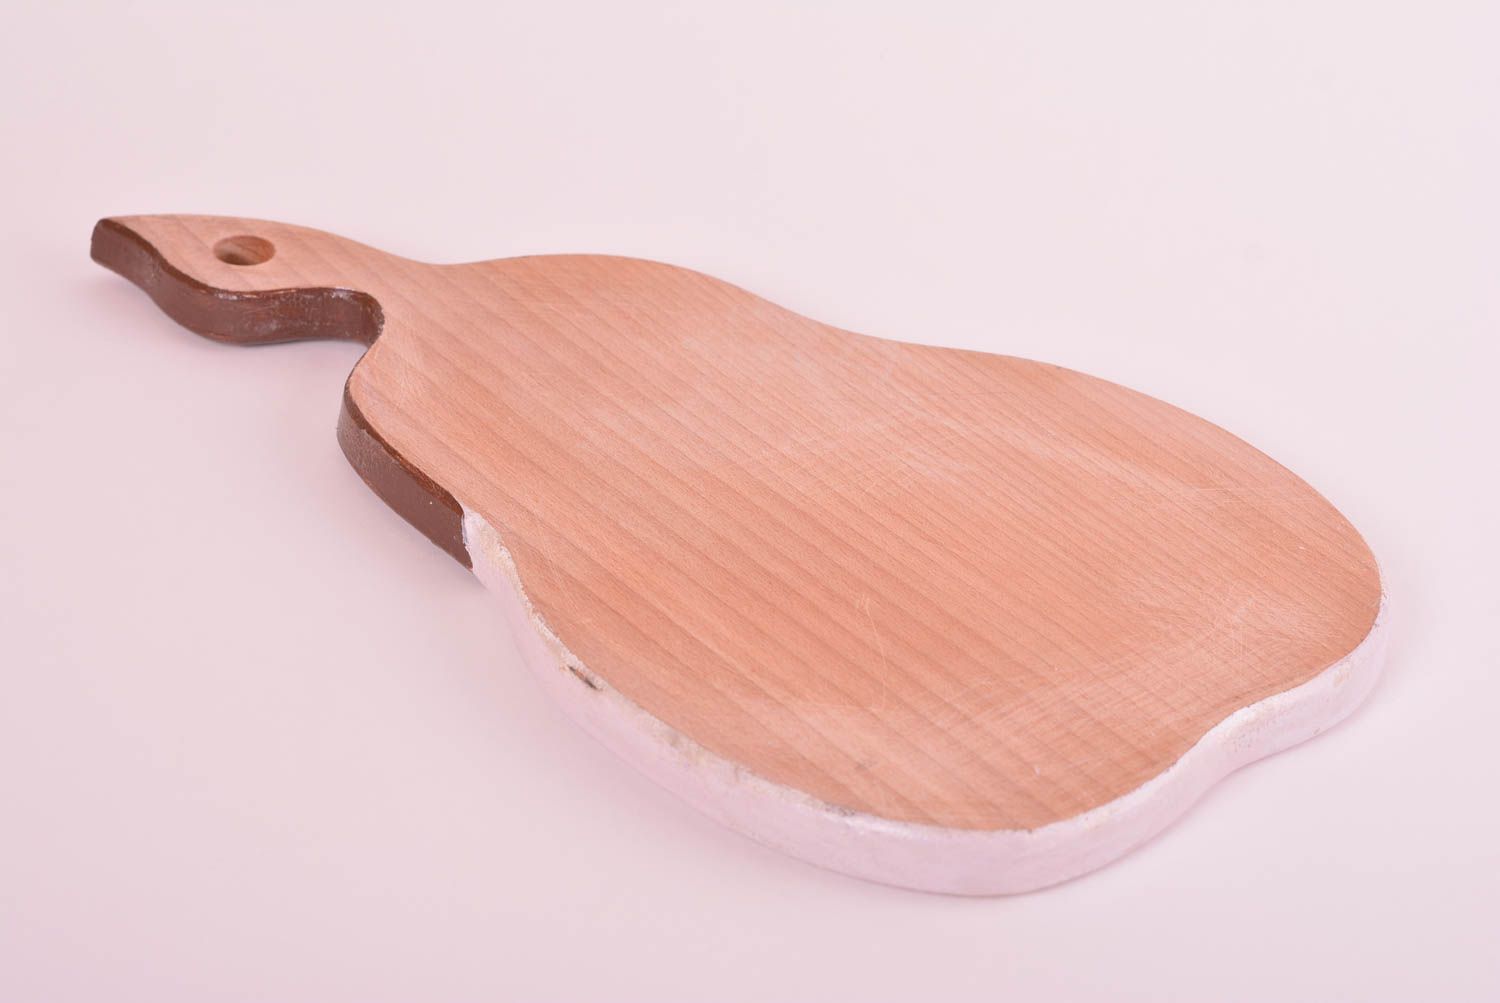 Handmade wooden chopping board kitchen cutting board home decor interior decor photo 5